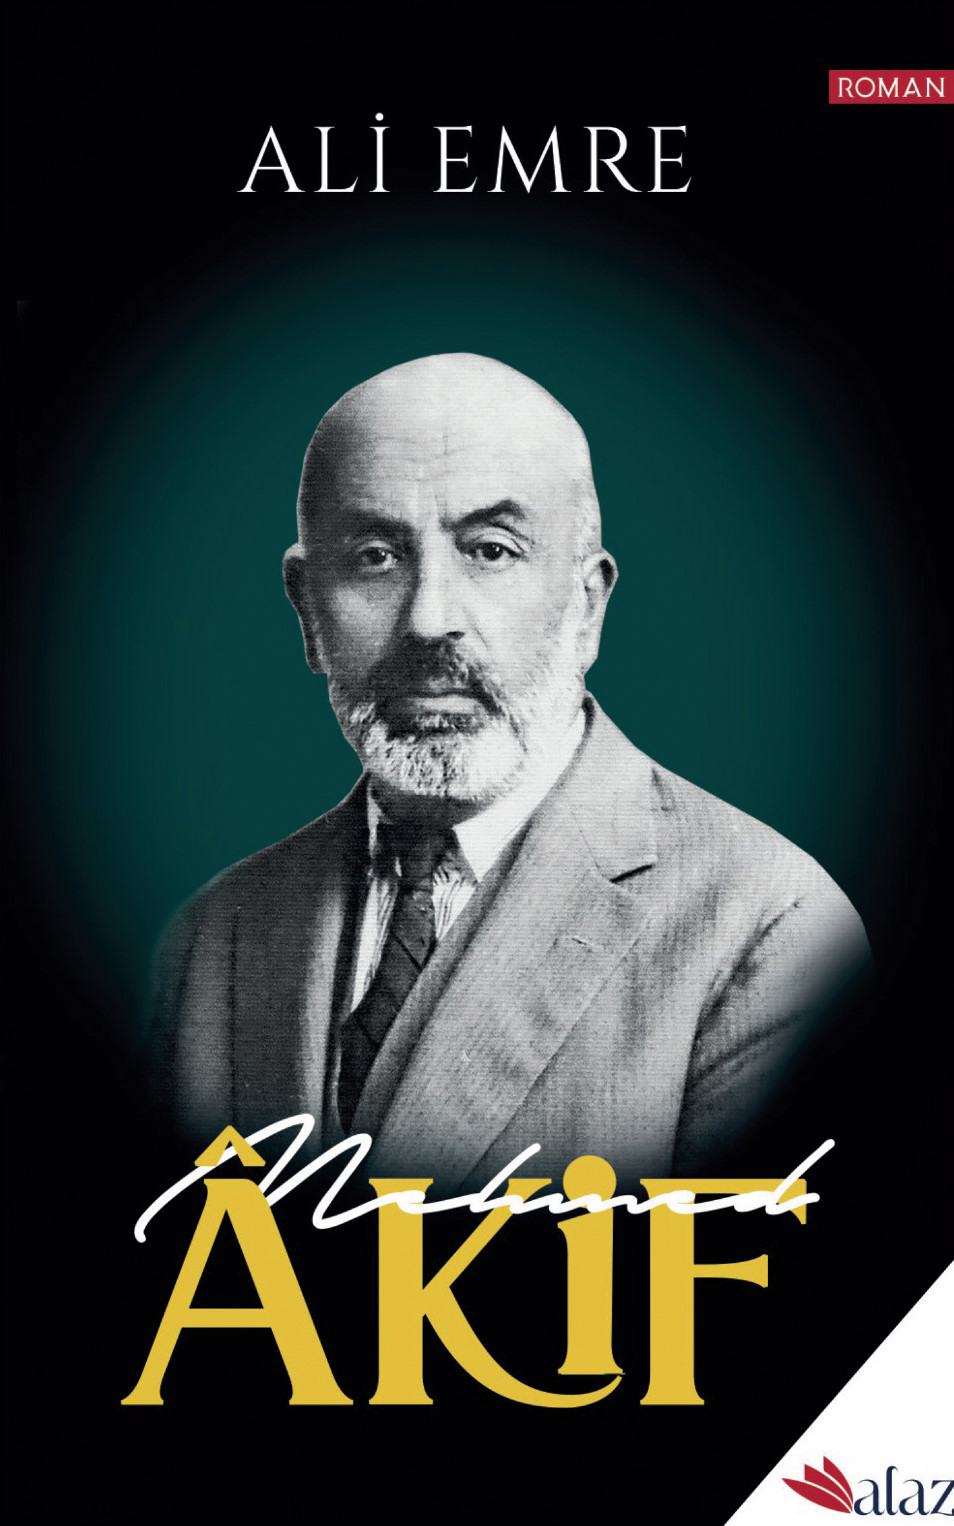 Mehmet Akif’in hayatından kesitler bulacağınız romanın her bölümünde, döneme ve mütefekkir-şairin hayatına tanıklık eden önemli bir isim konuşturuluyor. Bunlardan biri de Mustafa Kemal Paşa.